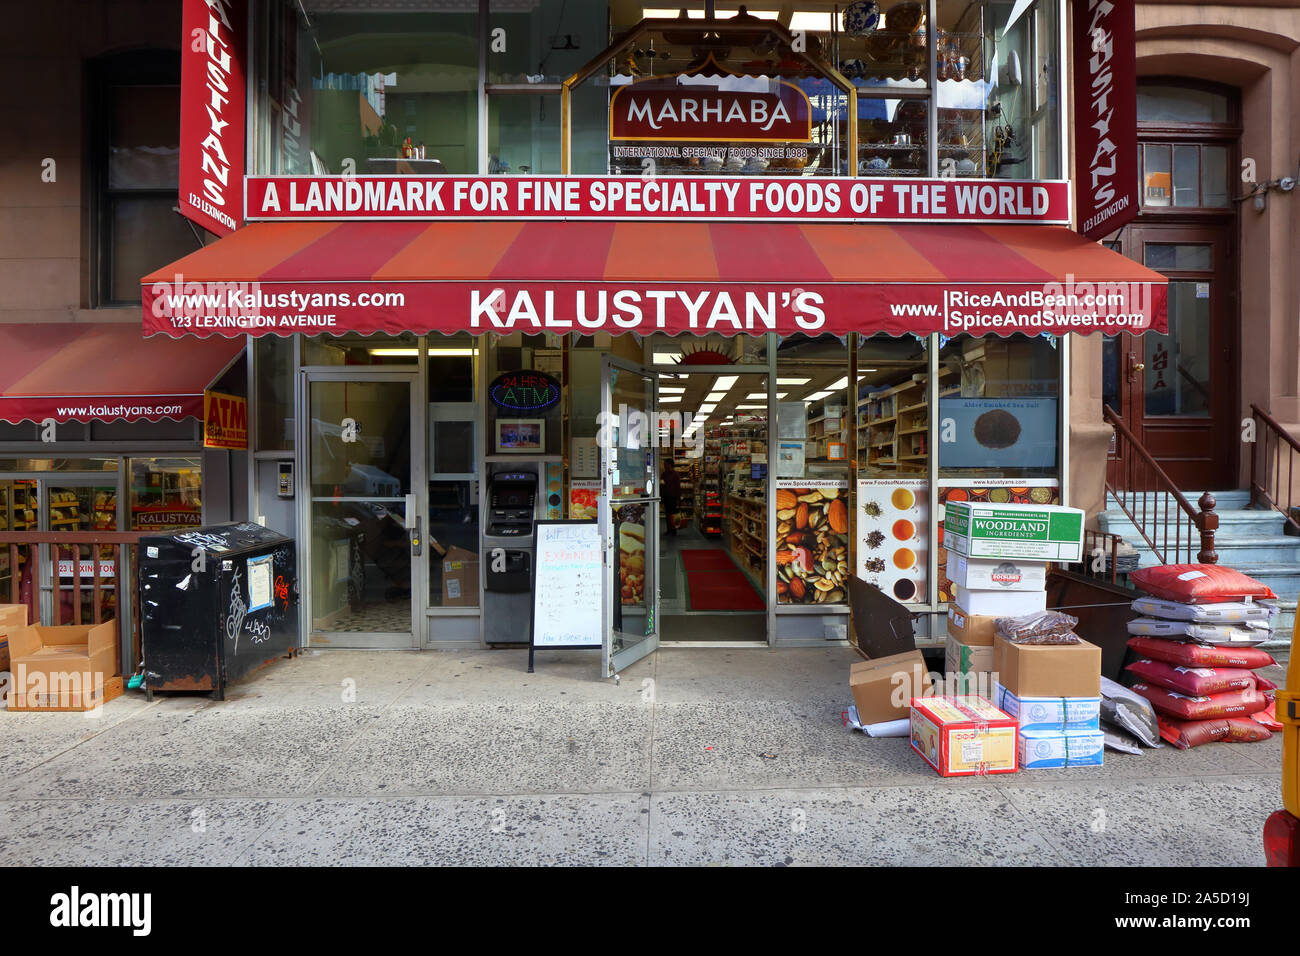 Kalustyan's, 123 Lexington Ave., New York, NY. aussen Storefront einer Spezialität in der Curry Hill Gegend von Manhattan. Stockfoto